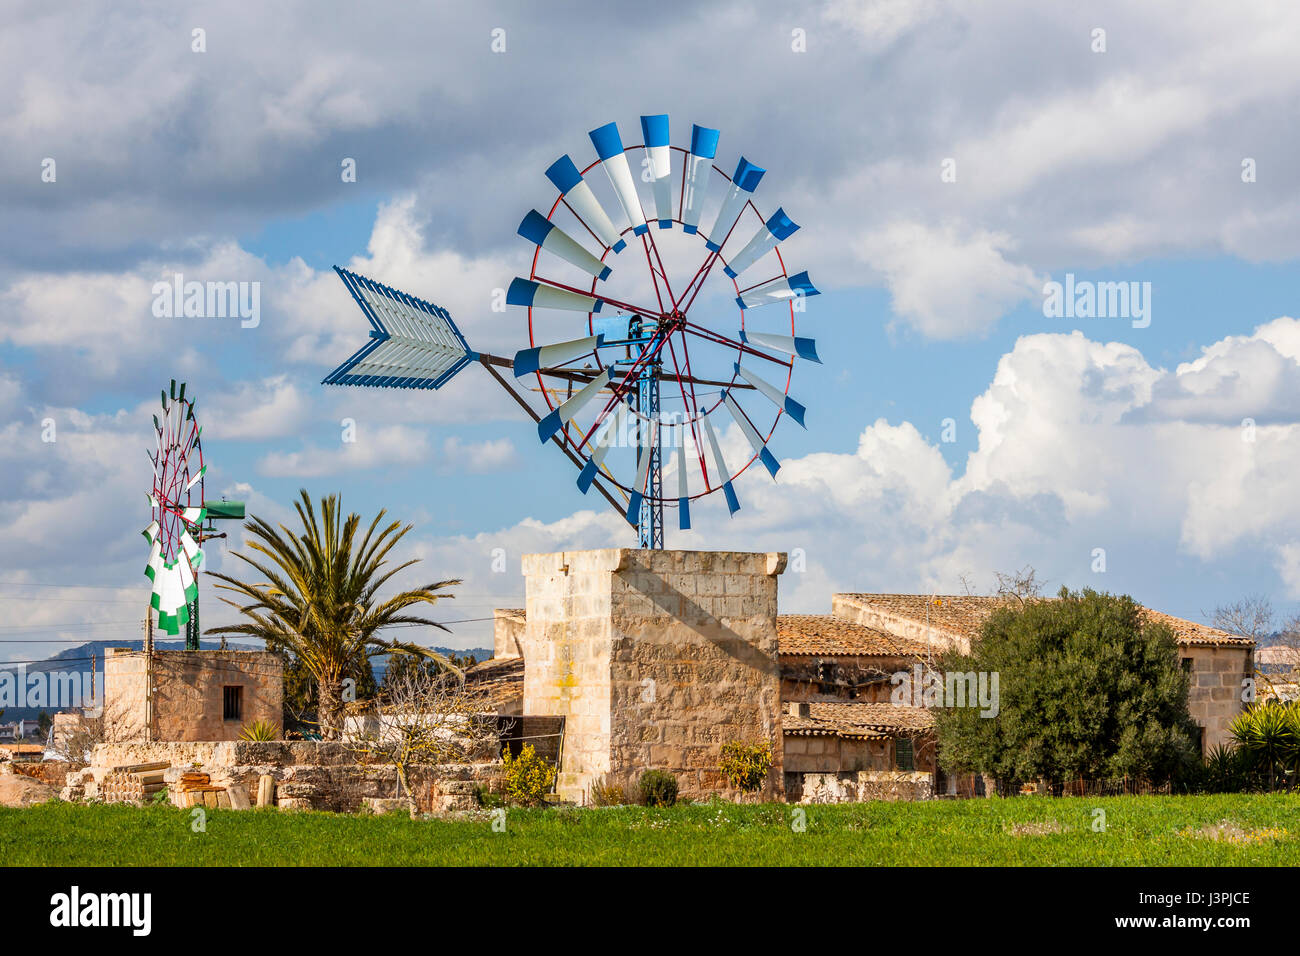 windmill for water pumping, Mallorca, type: Molino de ferro Stock Photo